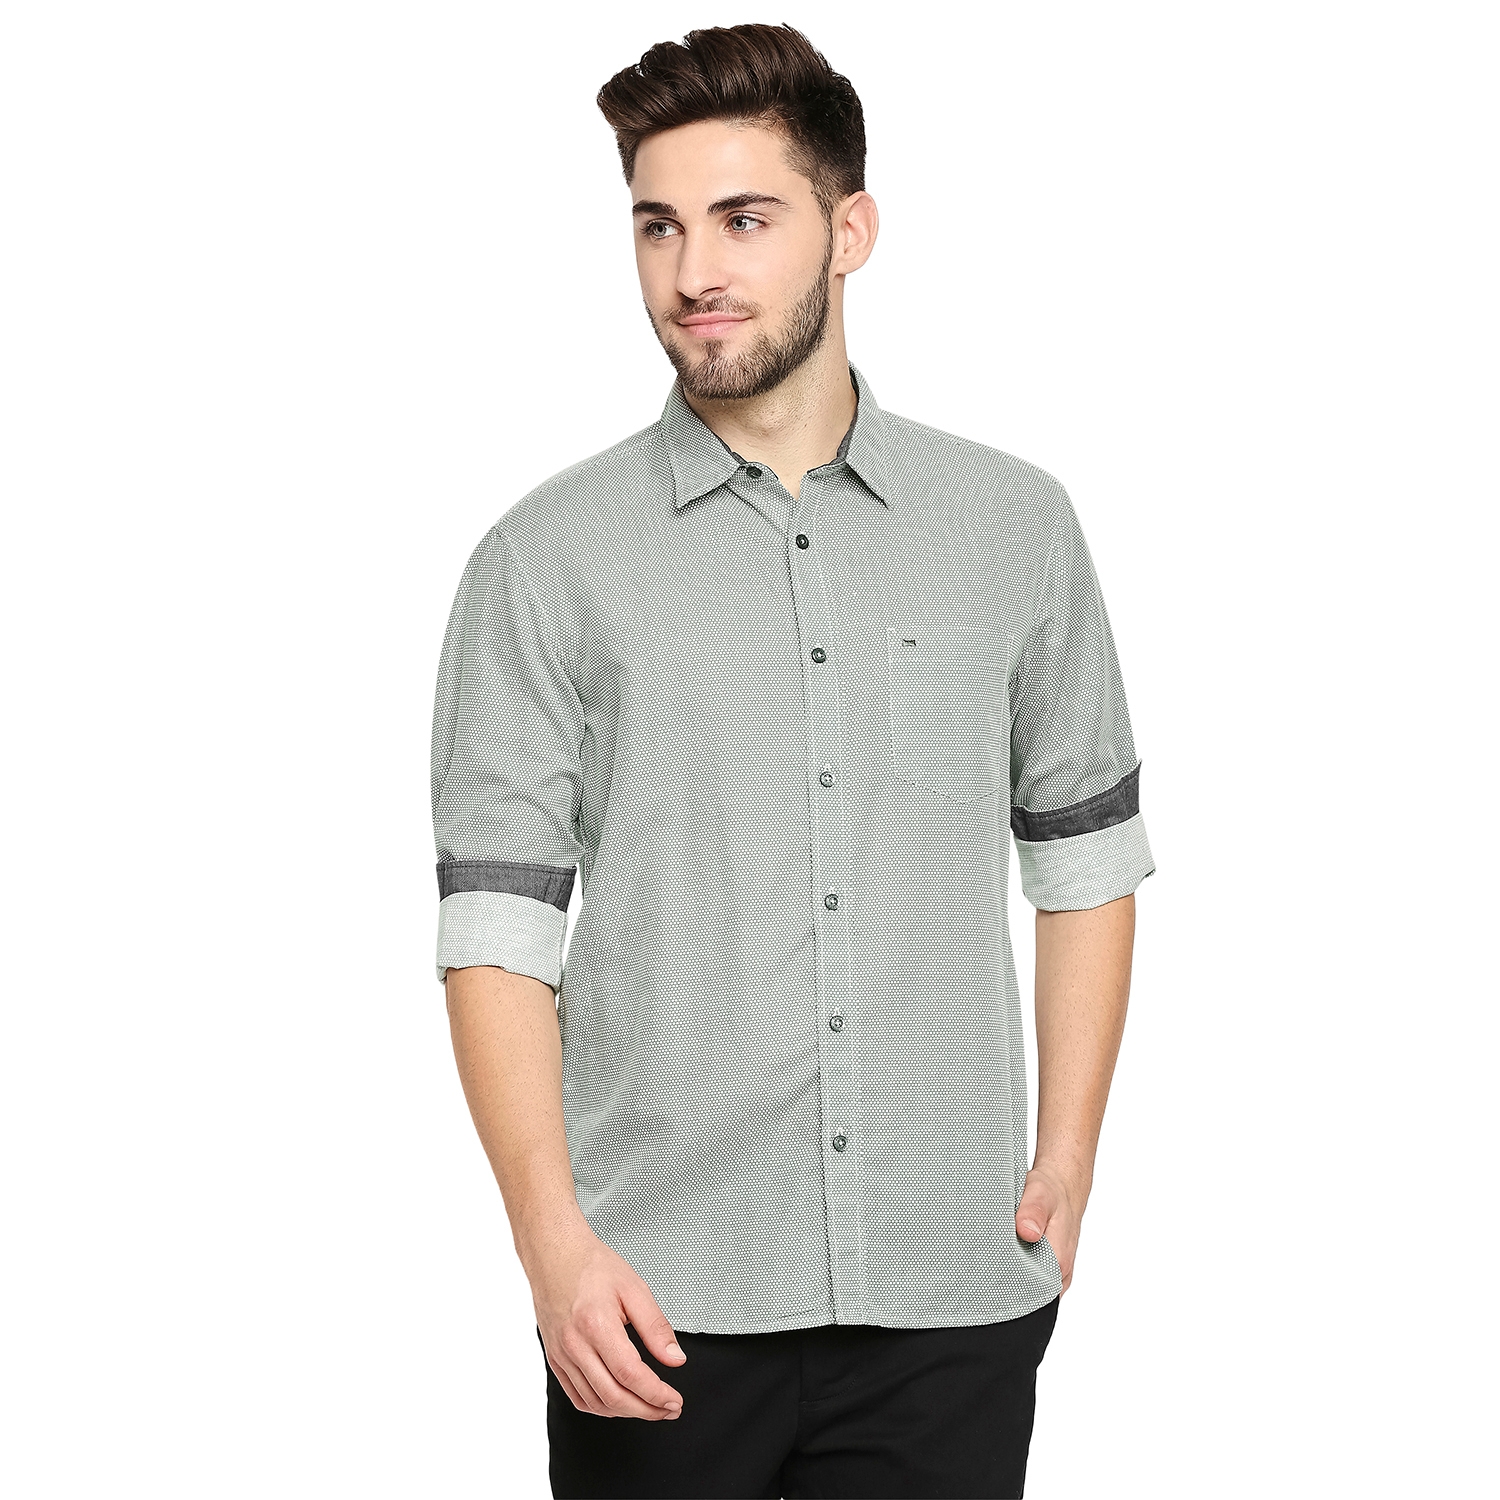 Basics | Basics Slim Fit Stone Green Cotton Hemp Printed Shirt